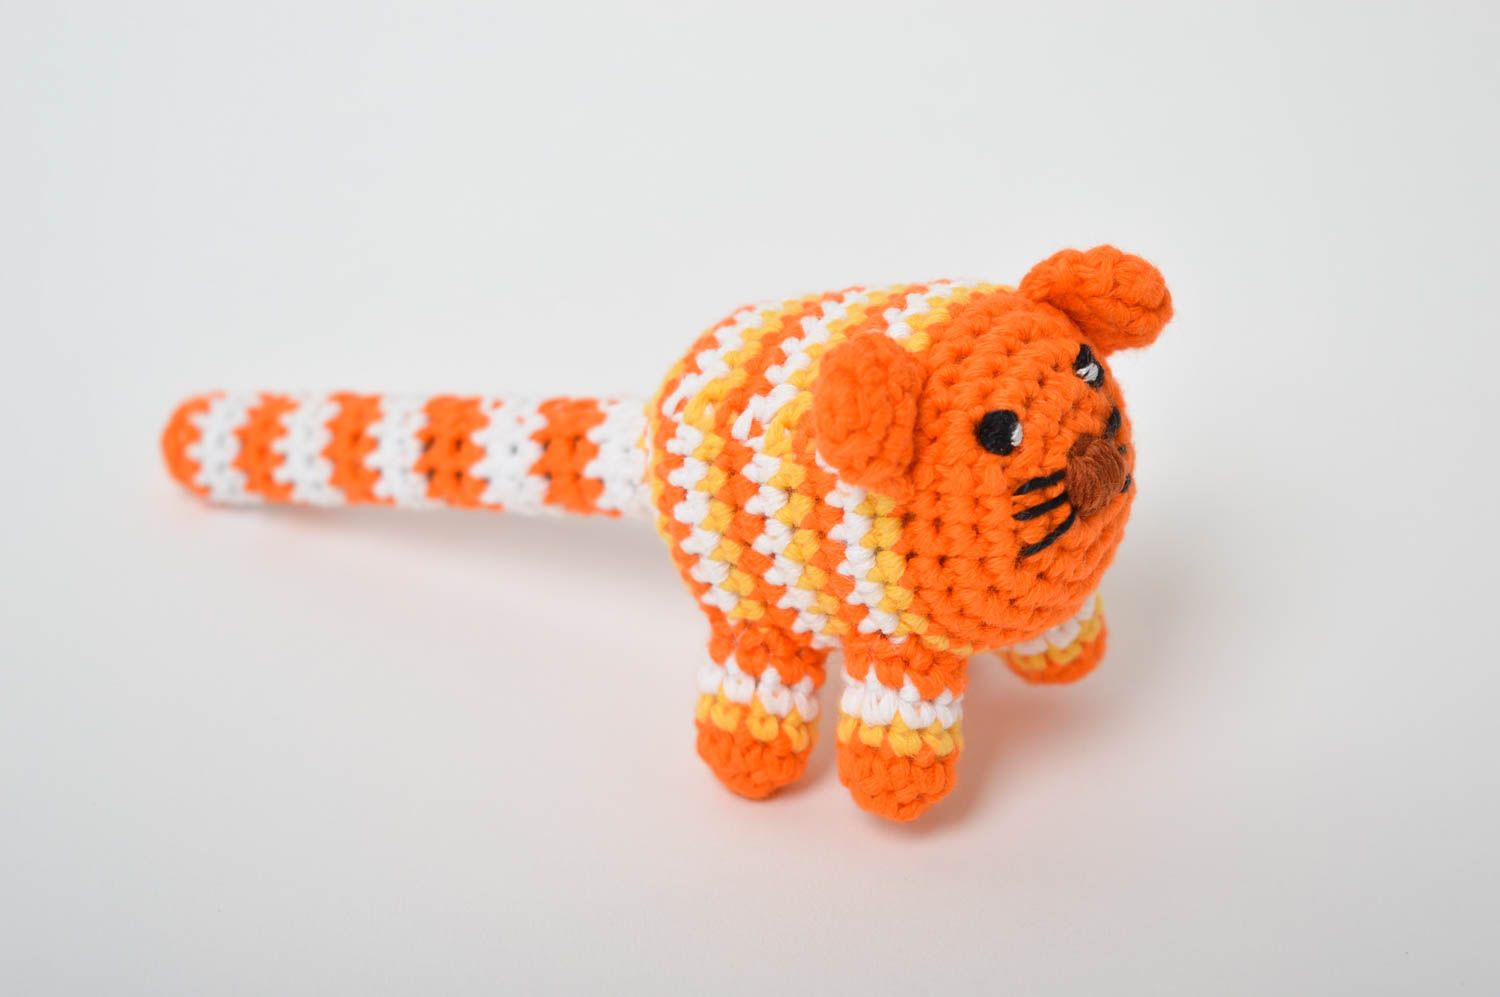 Игрушка котенок ручной работы мягкая игрушка маленького размера детская игрушка фото 2